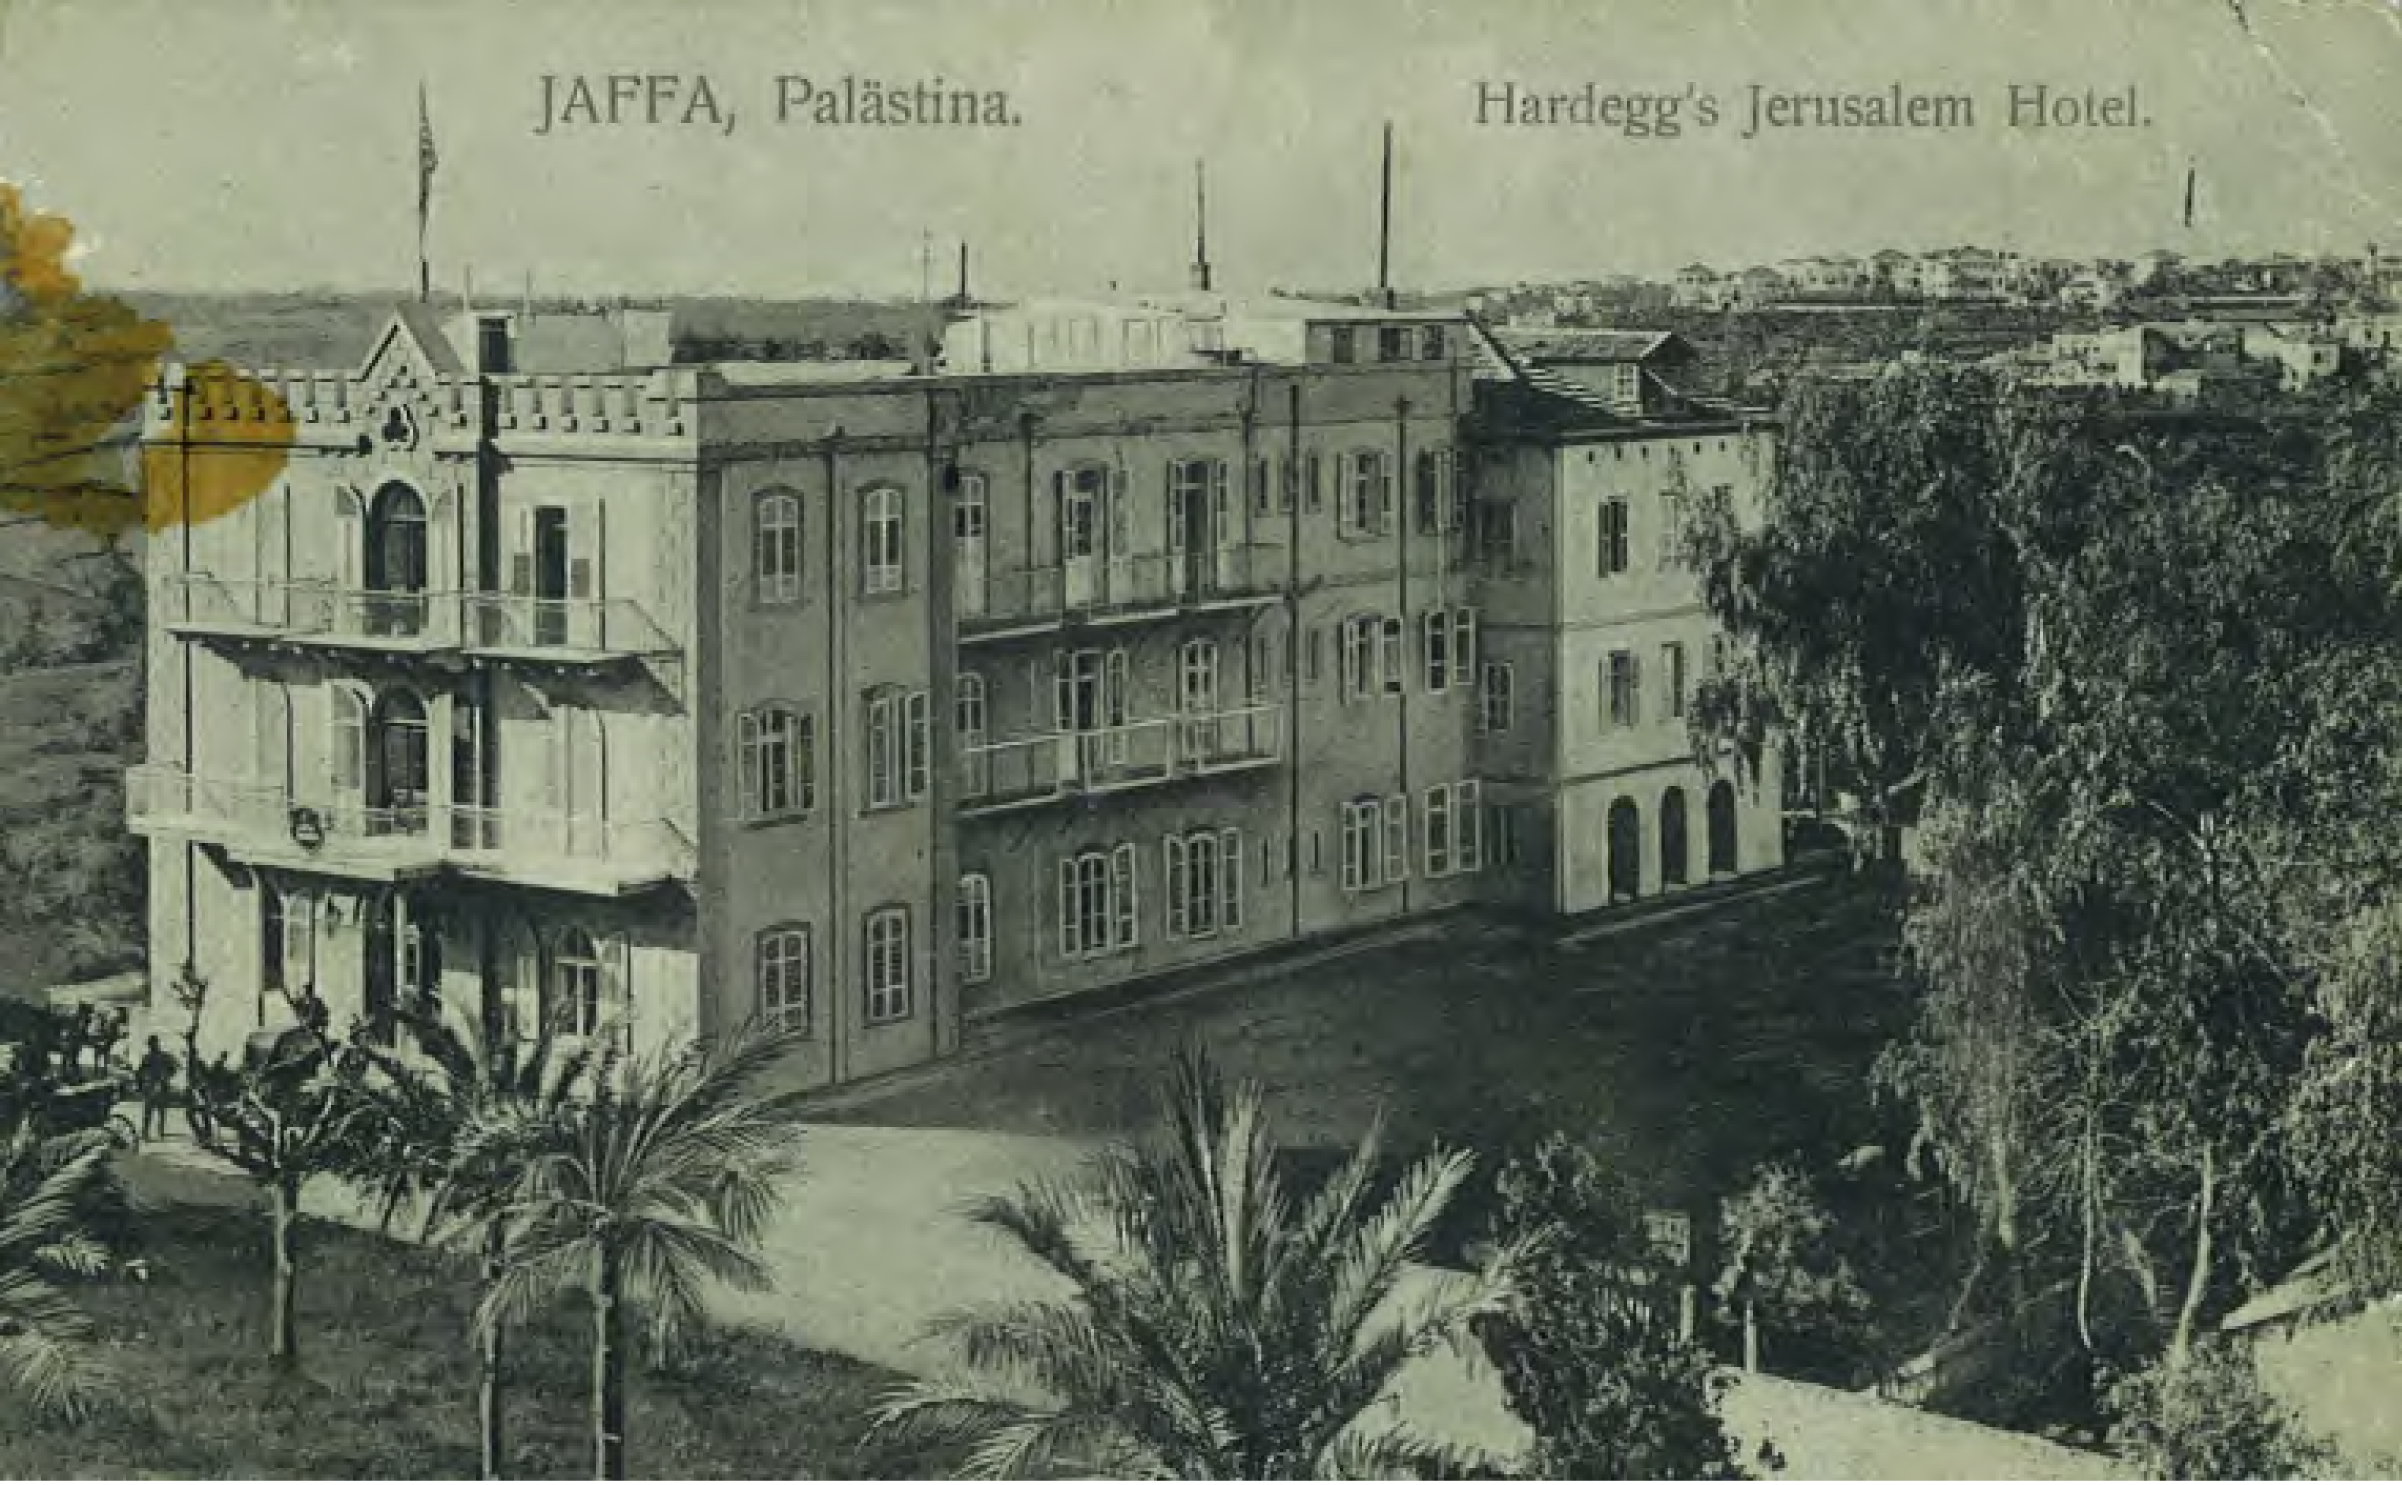 Hardegg's Jerusalem Hotel Jaffa, Palastina